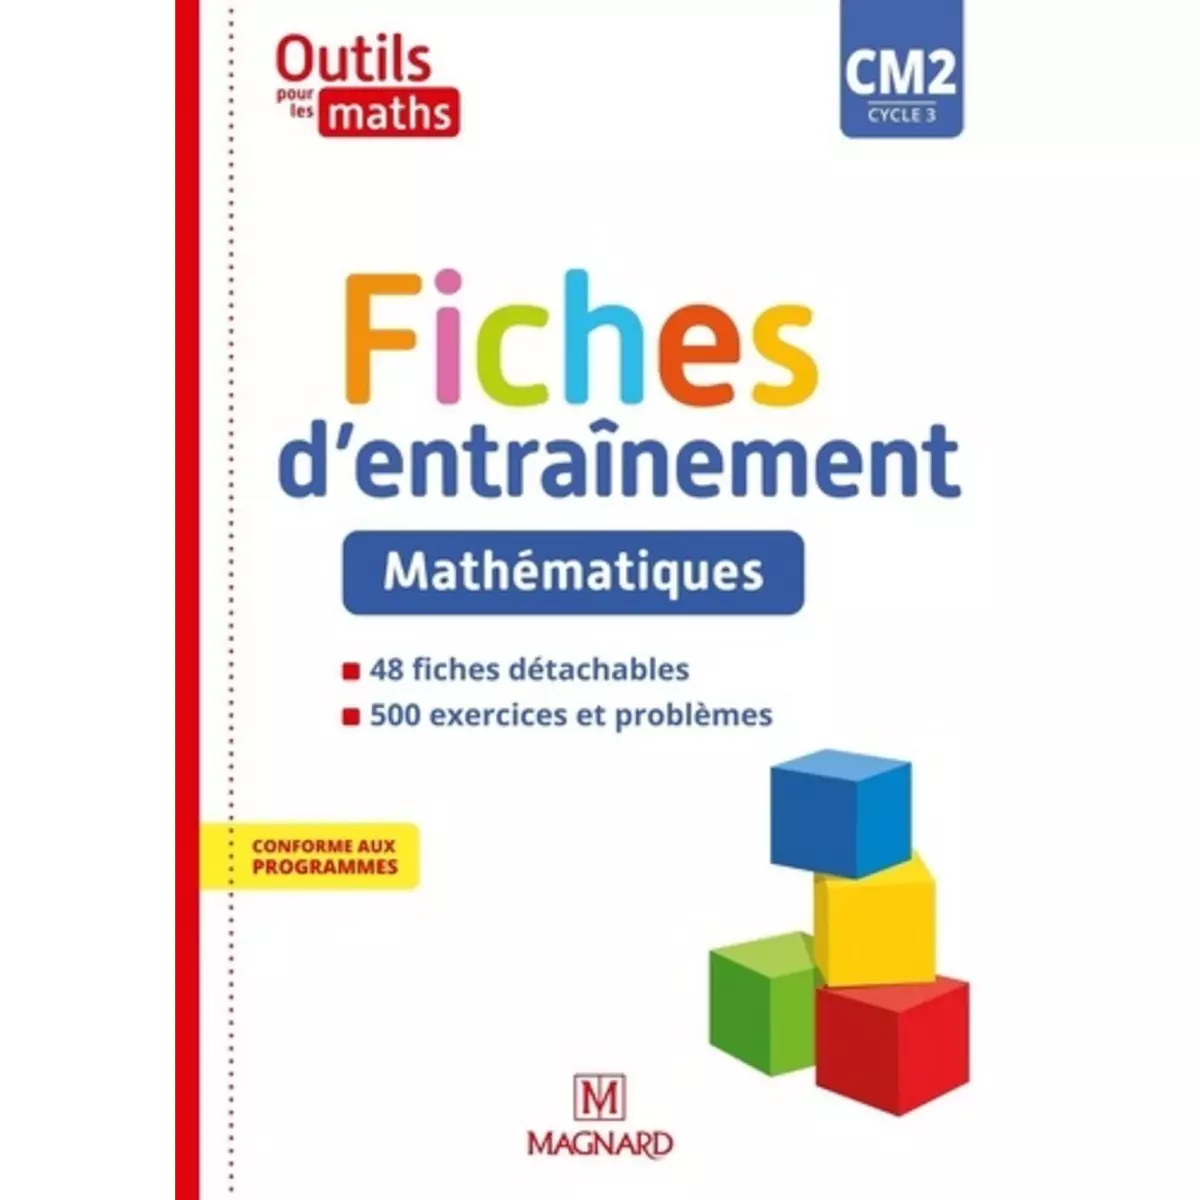  OUTILS POUR LES MATHS CM2 CYCLE 3. FICHES D'ENTRAINEMENT, EDITION 2021, Petit-Jean Isabelle